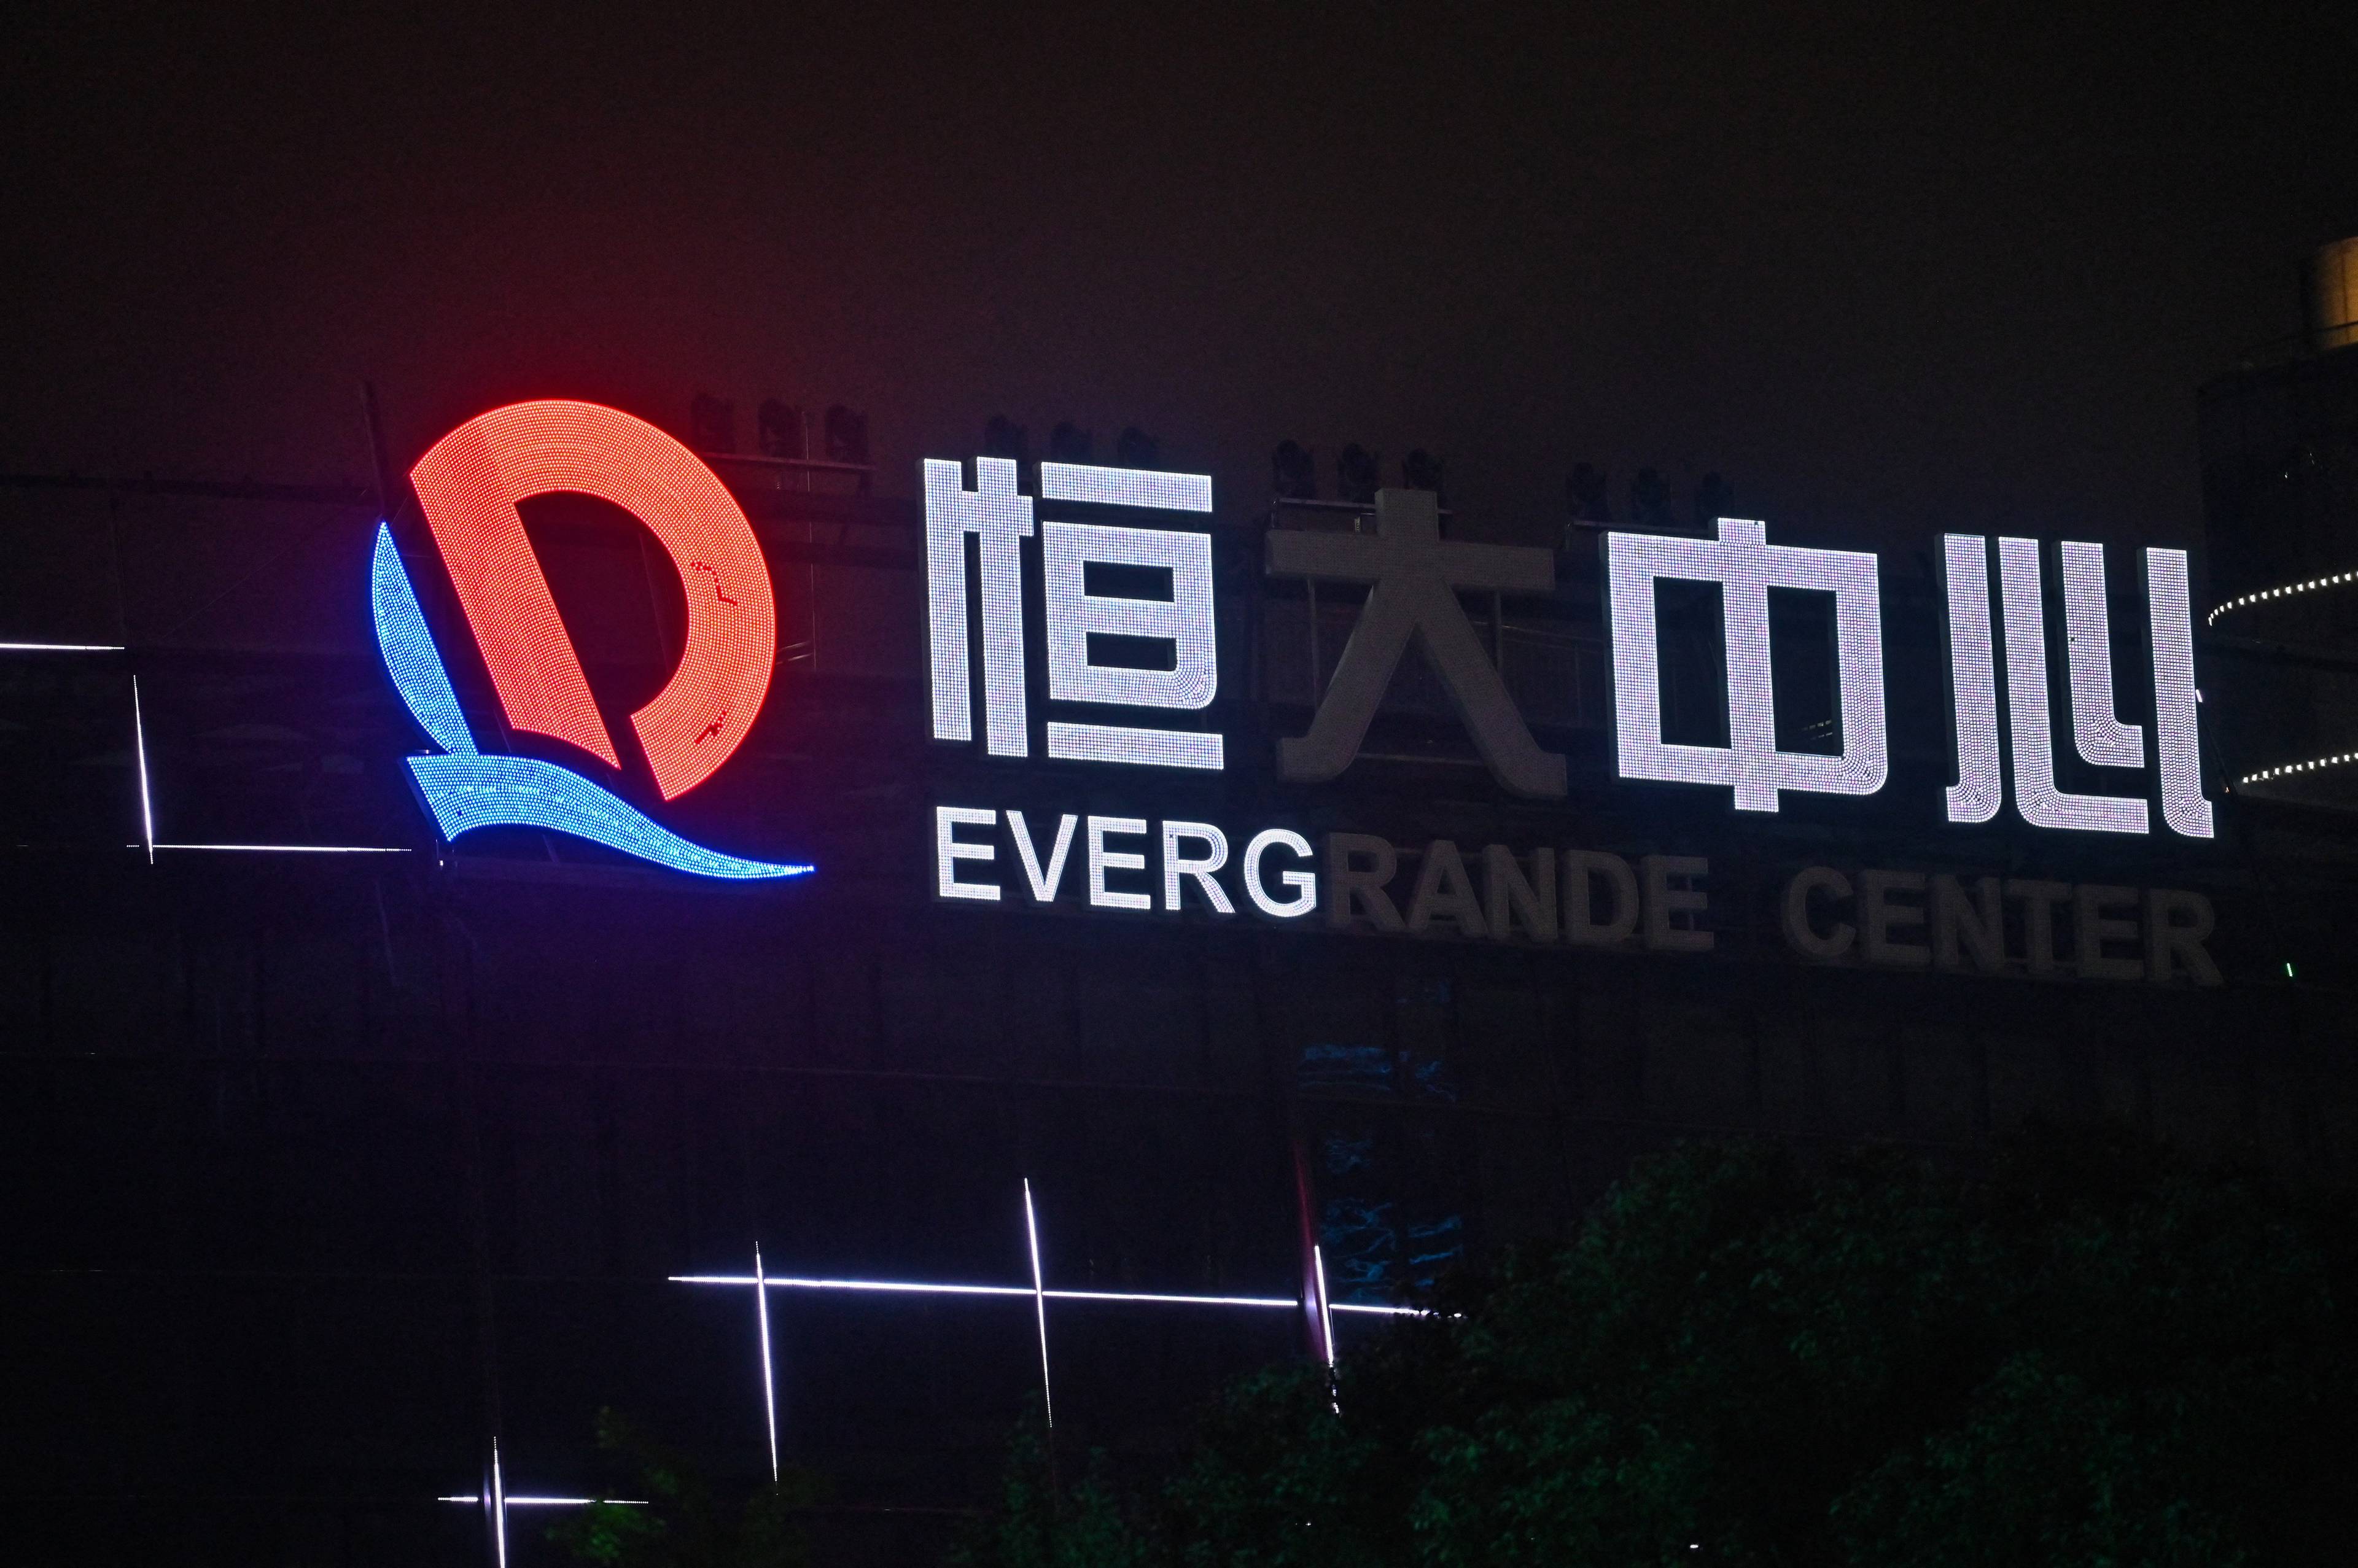 Niewyświetlający się w całości neon po chińsku